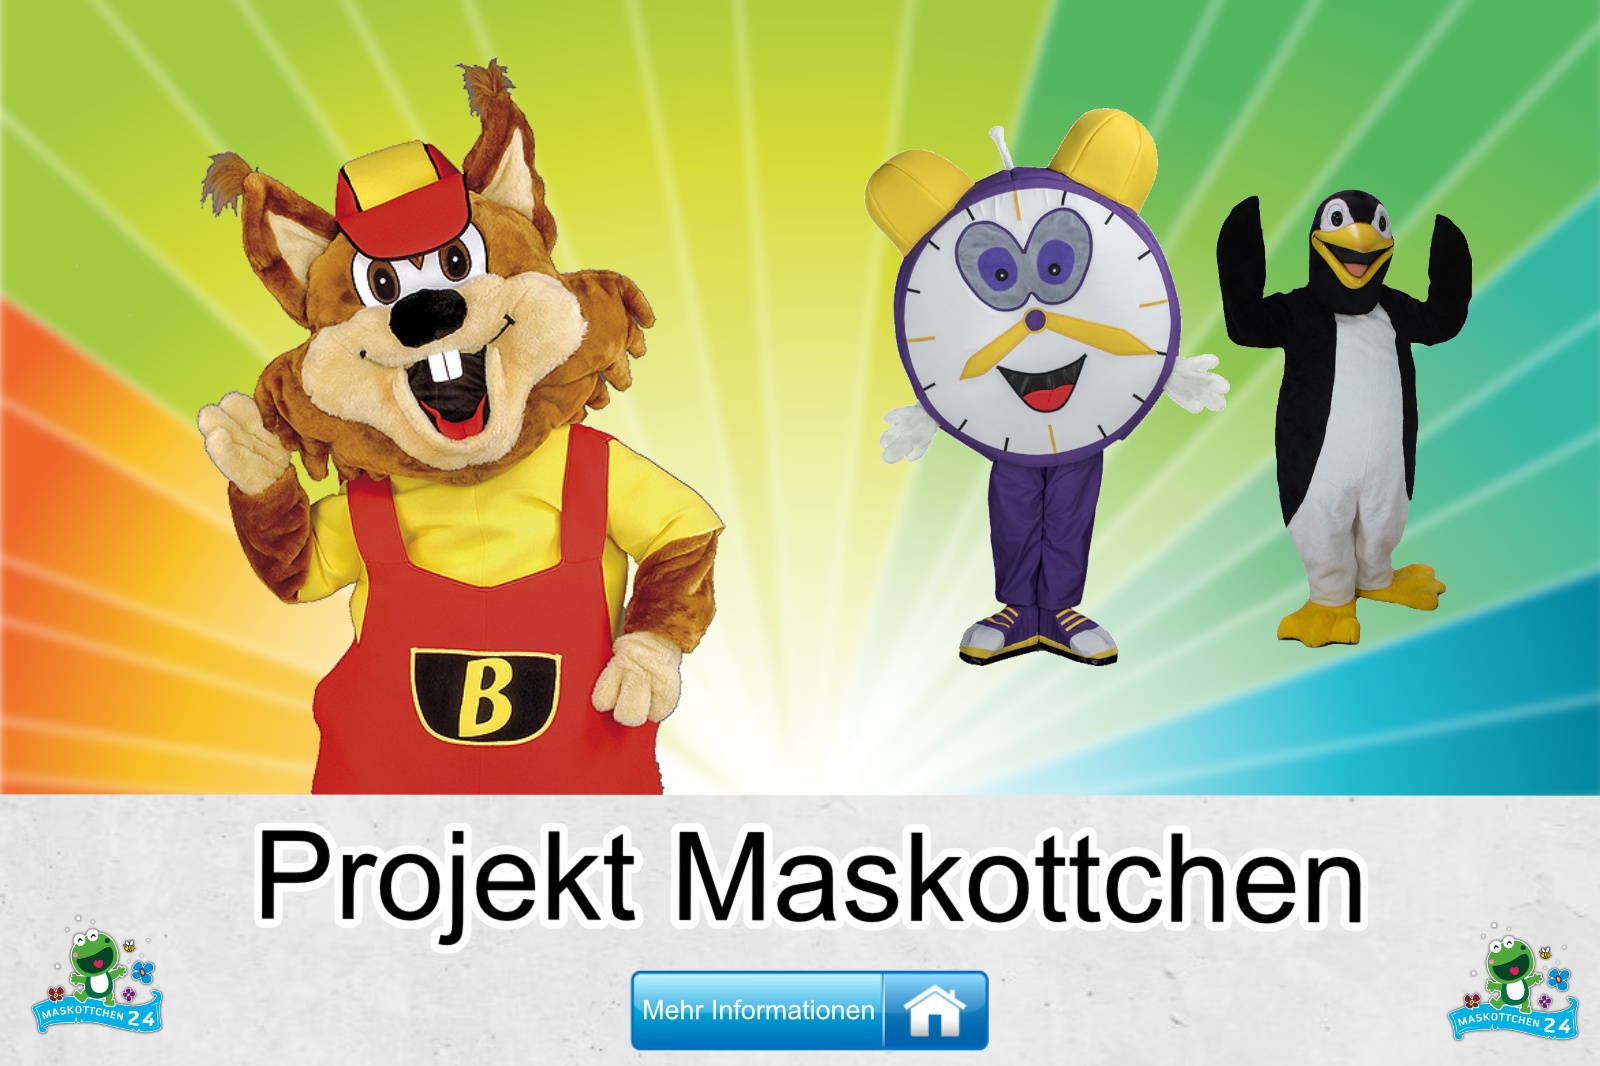 Projekt Maskottchen Kostüm kaufen, günstige Produktion / Herstellung